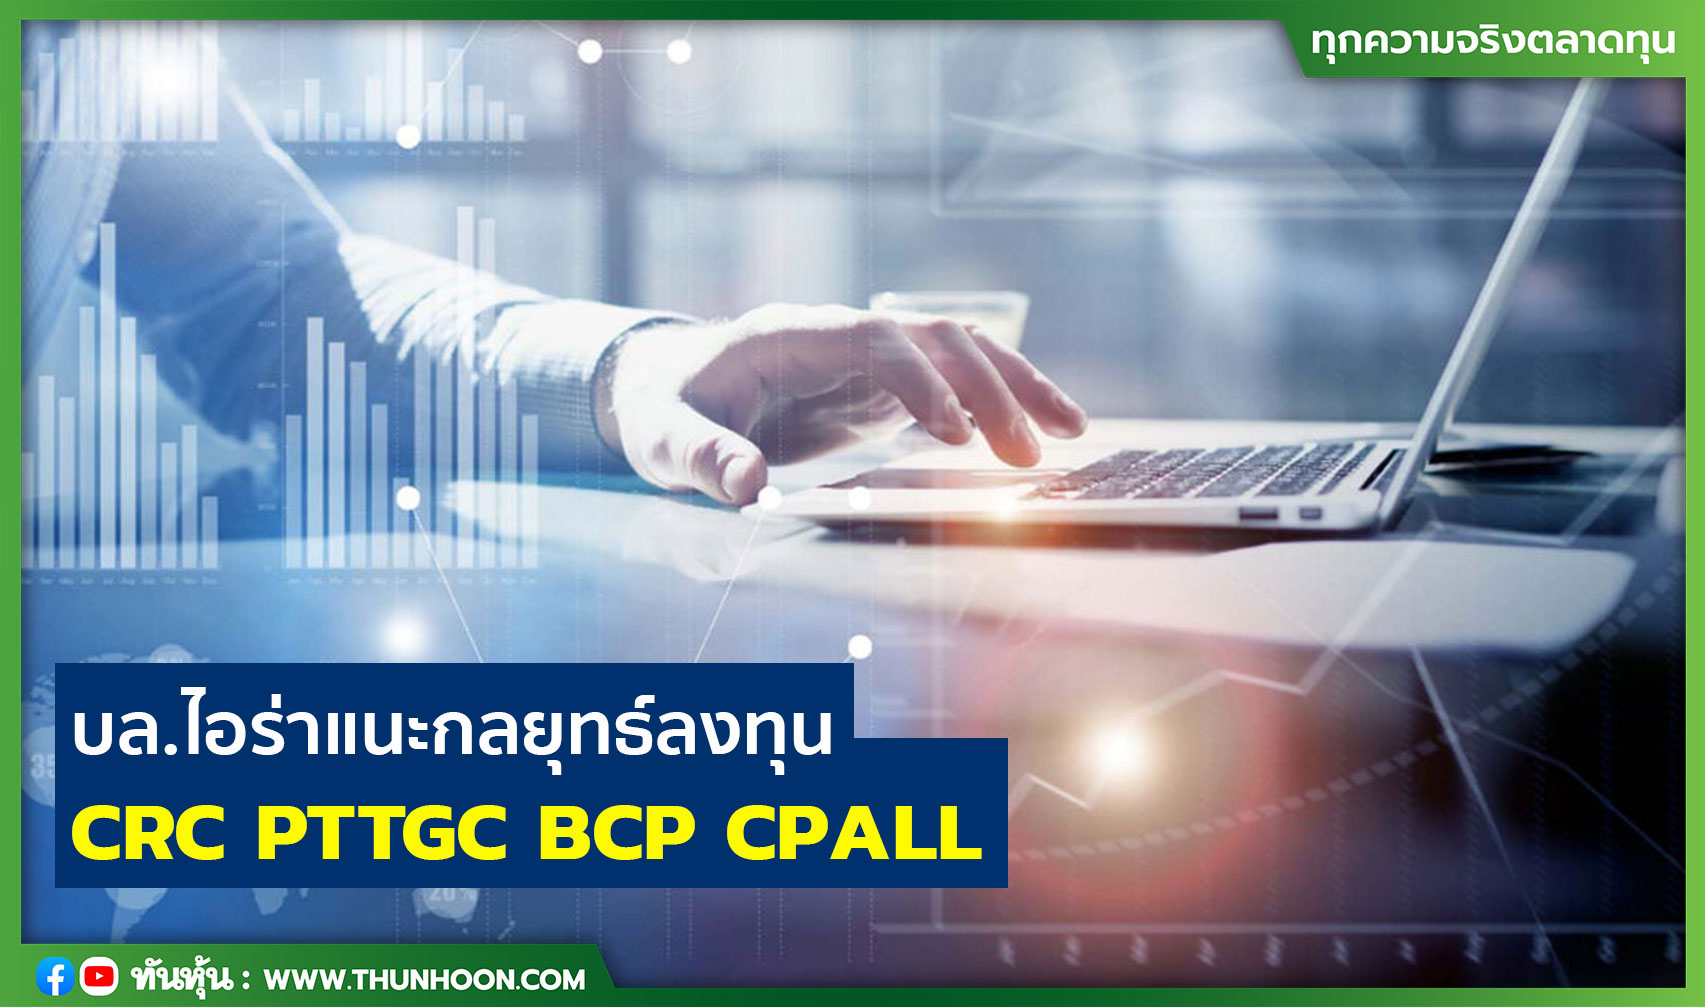 บล.ไอร่าแนะกลยุทธ์ลงทุน CRC  PTTGC  BCP  CPALL 